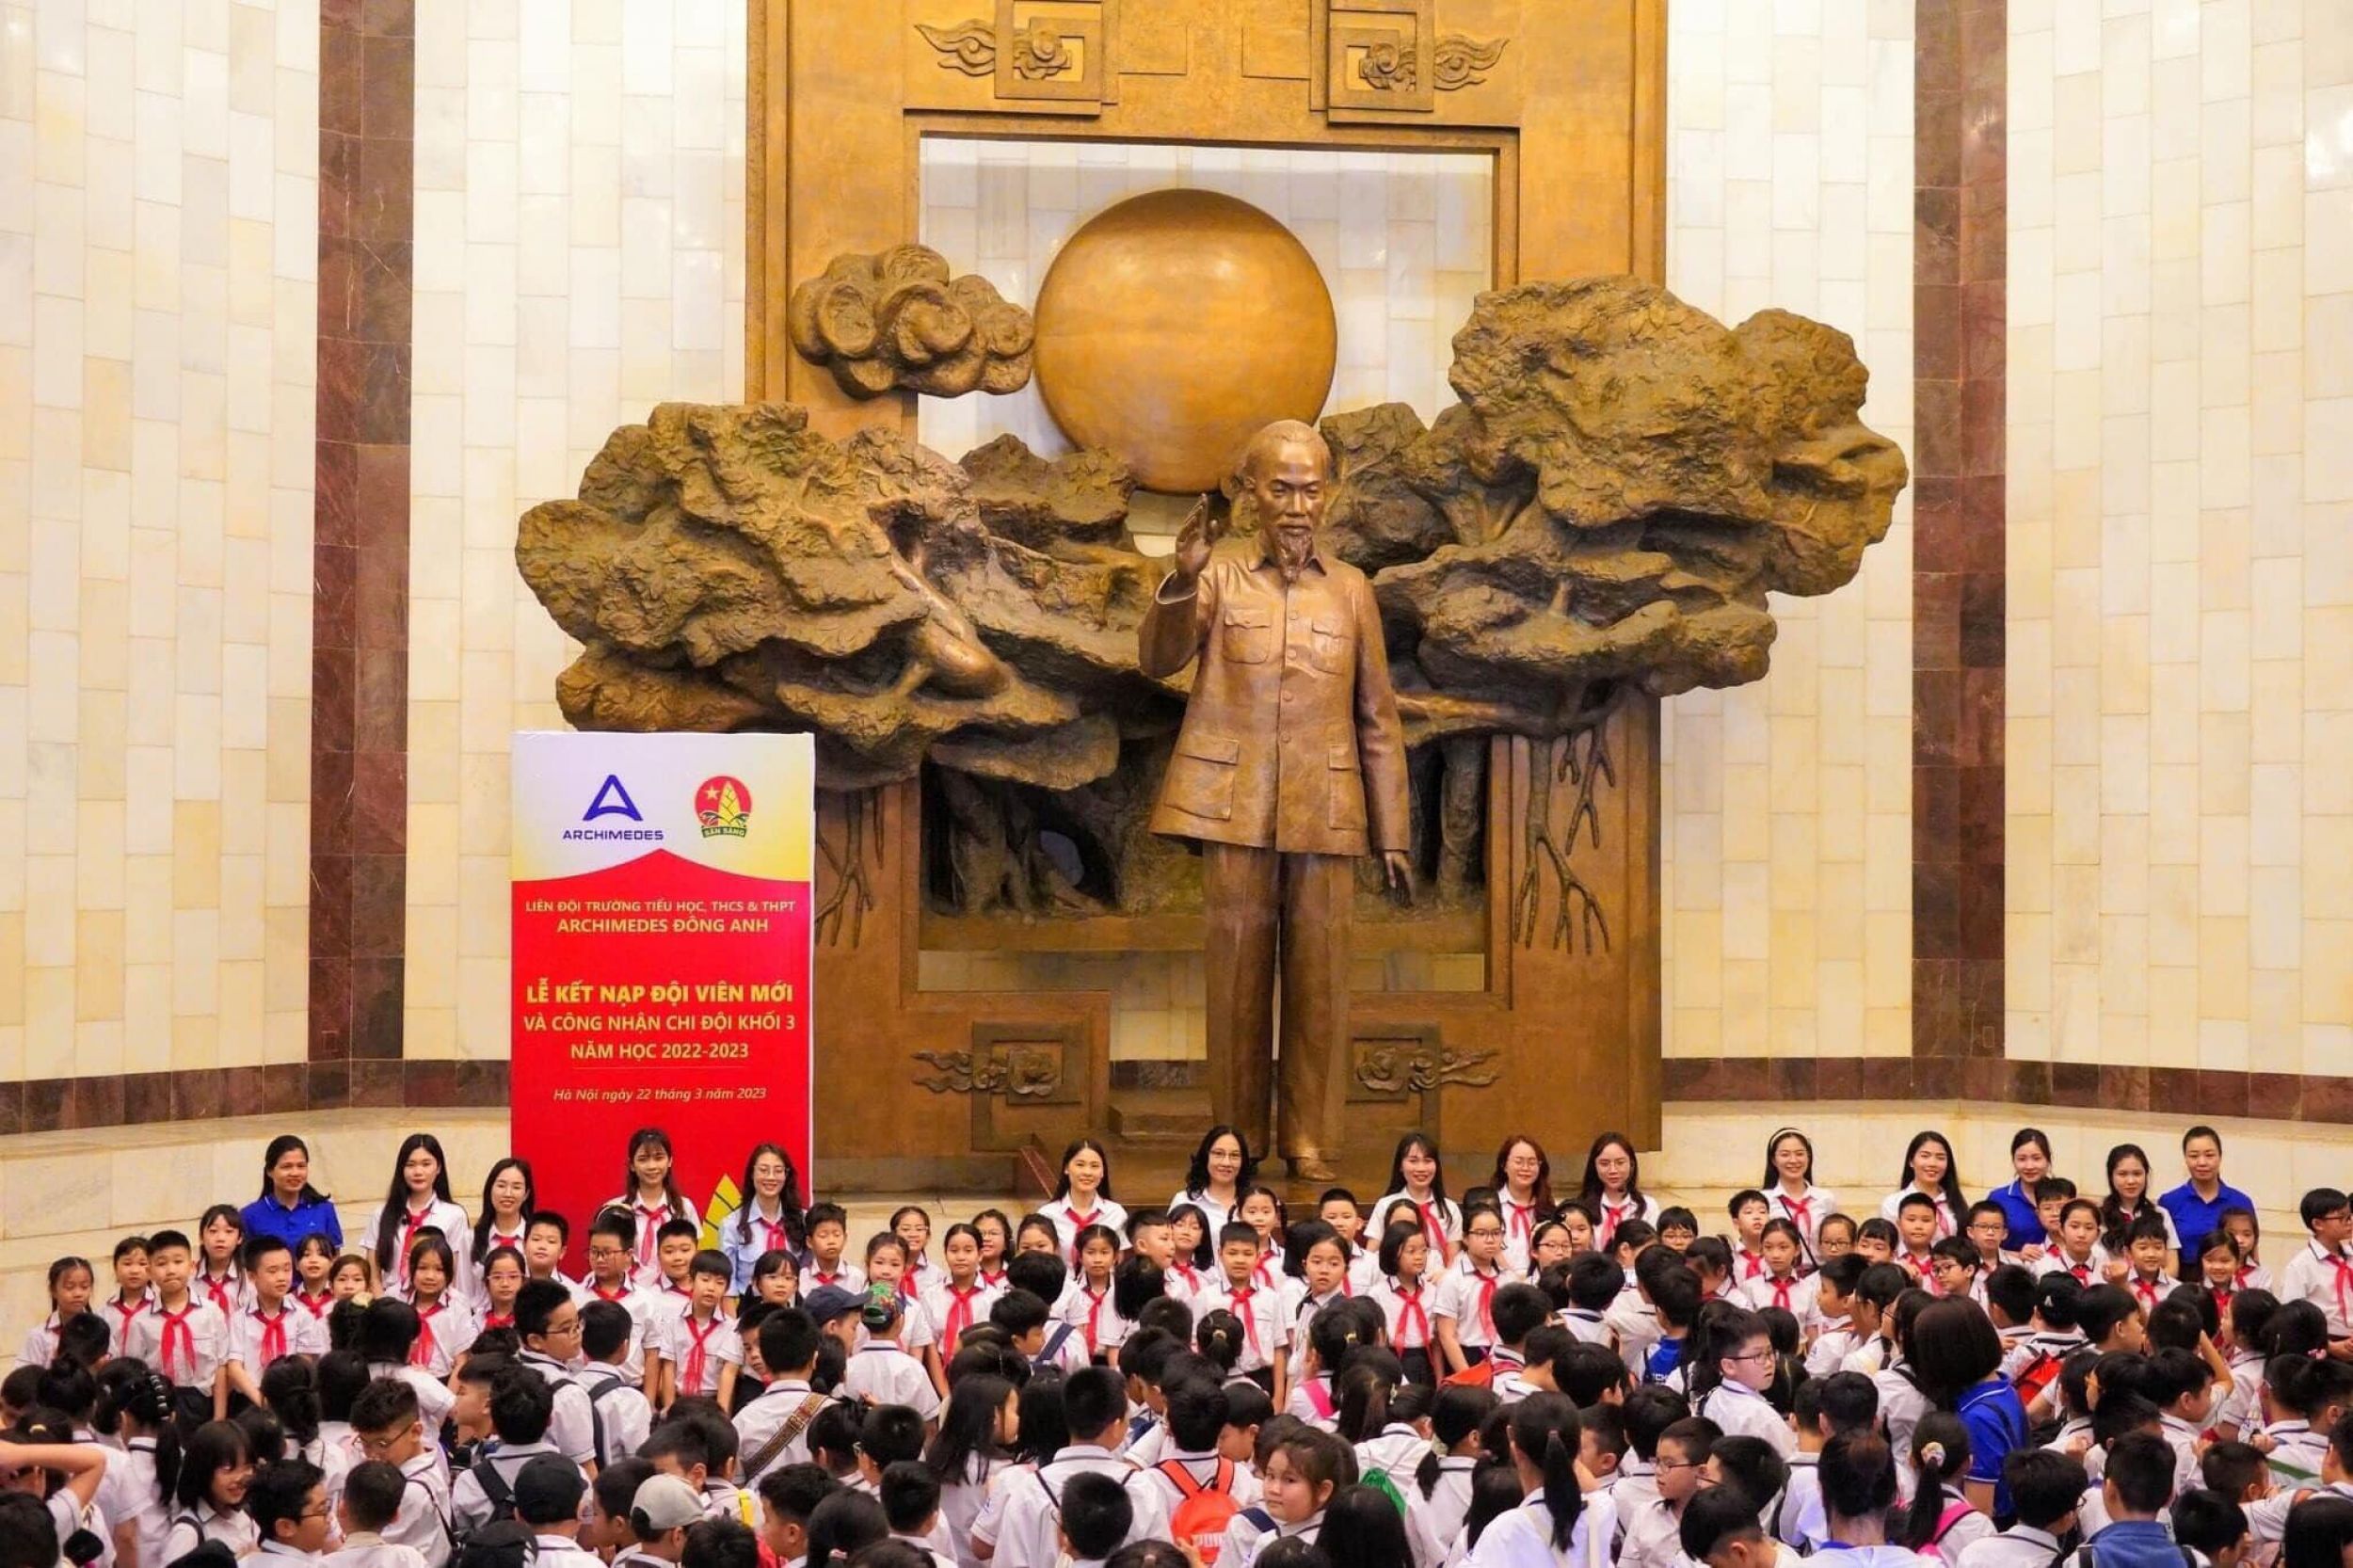 [ADAS] Lễ kết nạp đội viên mới và chuyến đi khám phá Bảo tàng Hồ Chí Minh của Arcers Khối 3